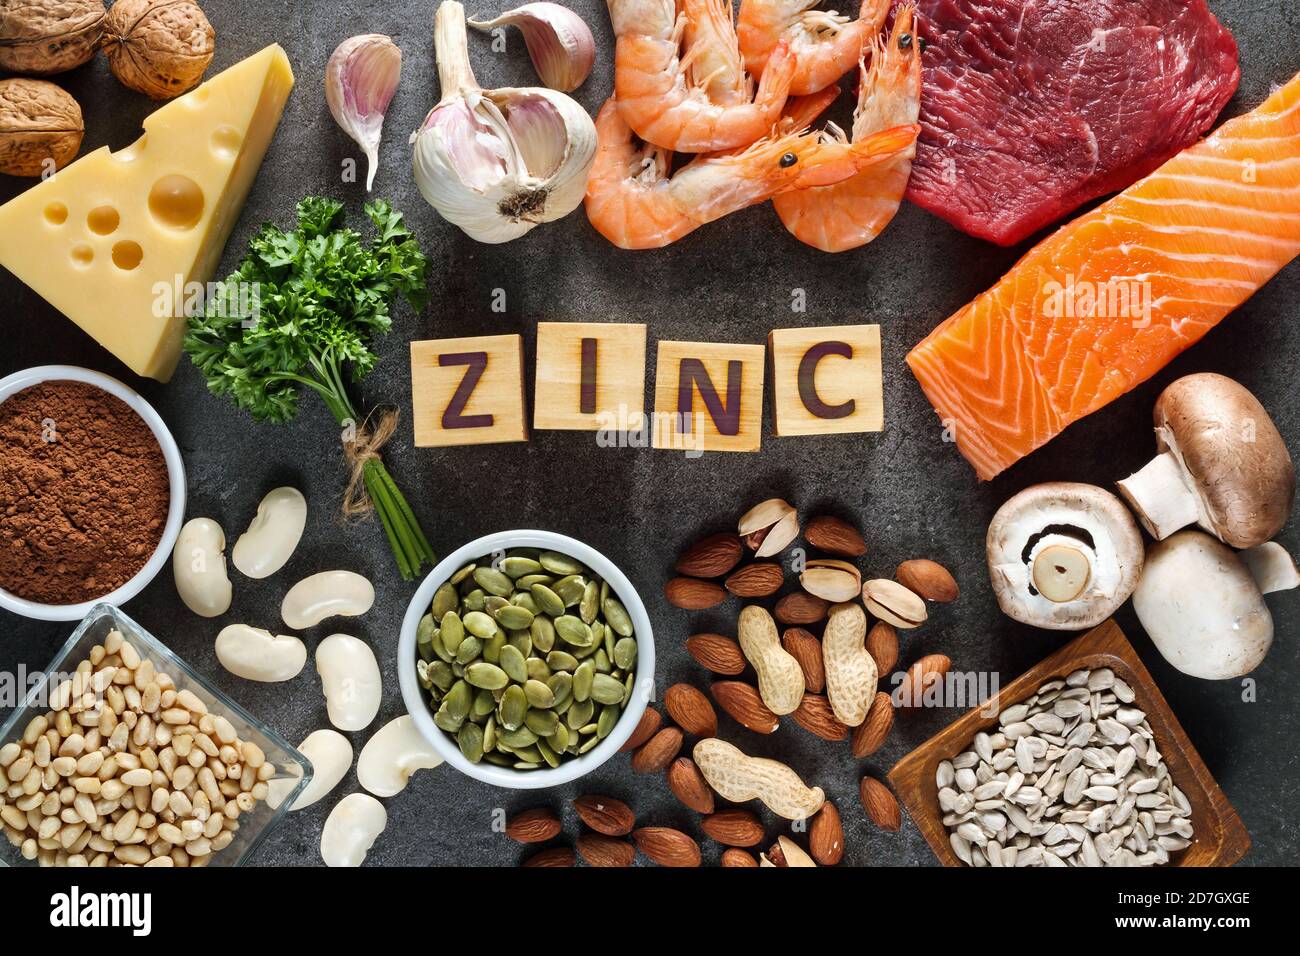 Alimenti High in zinco come salmone, frutti di mare-gamberi, manzo, formaggio giallo, foglie di prezzemolo, funghi, cacao, semi di zucca, aglio, fagiolo, mandorle, pinoli. Foto Stock